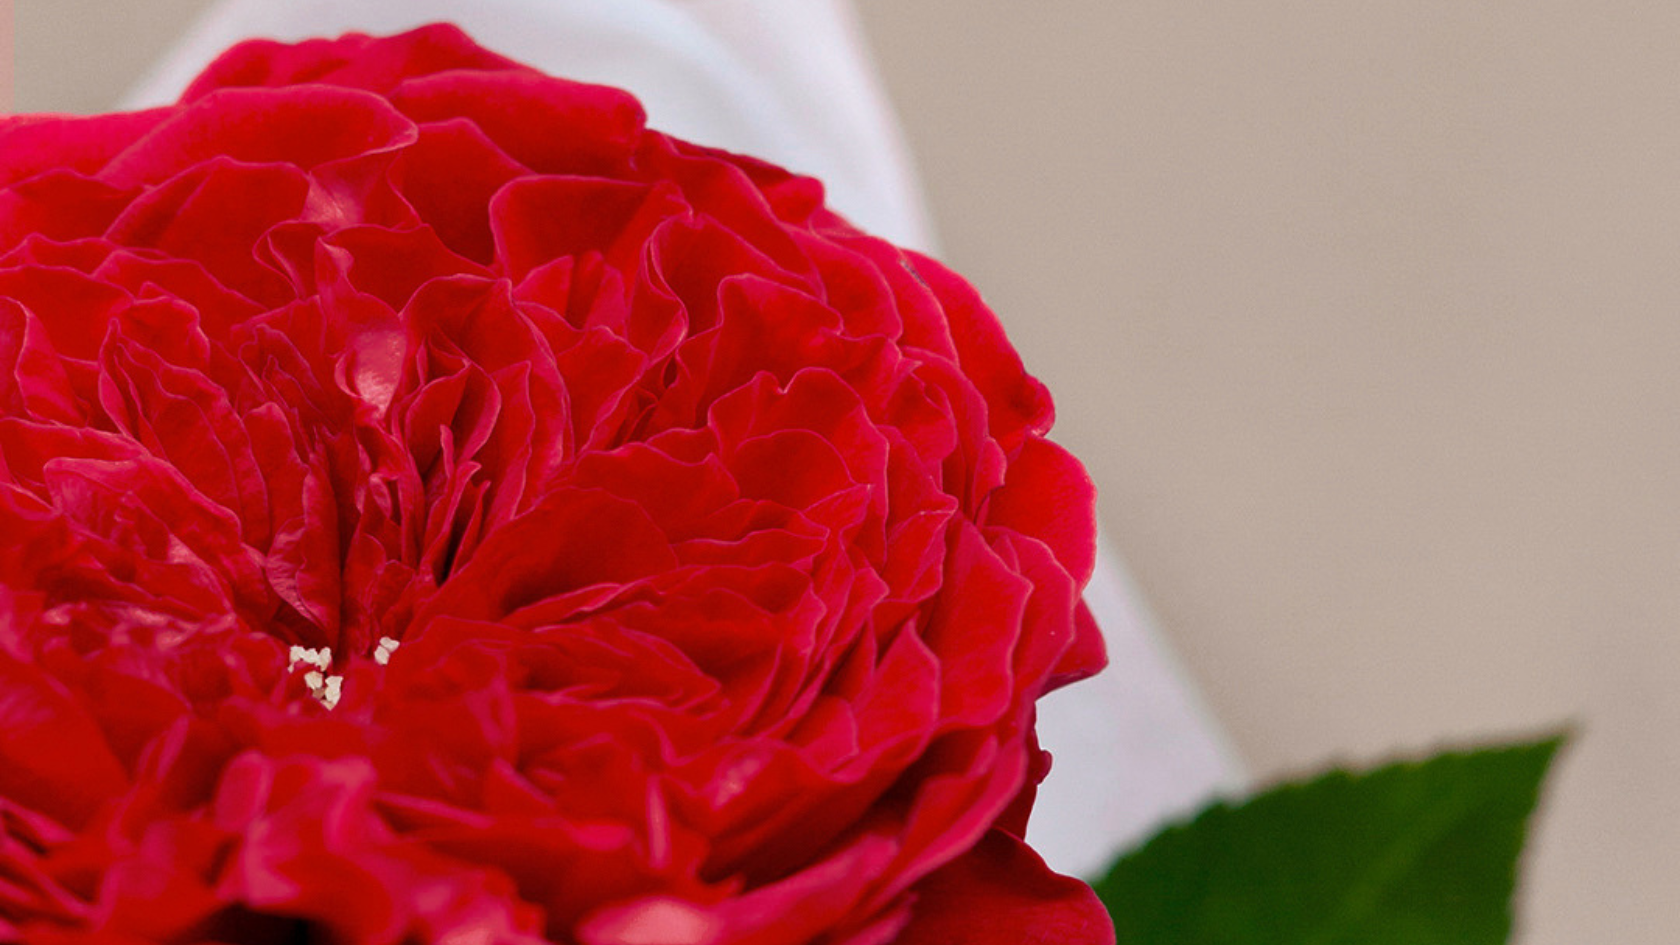 Our Sant Jordi's rose with Casa Protea